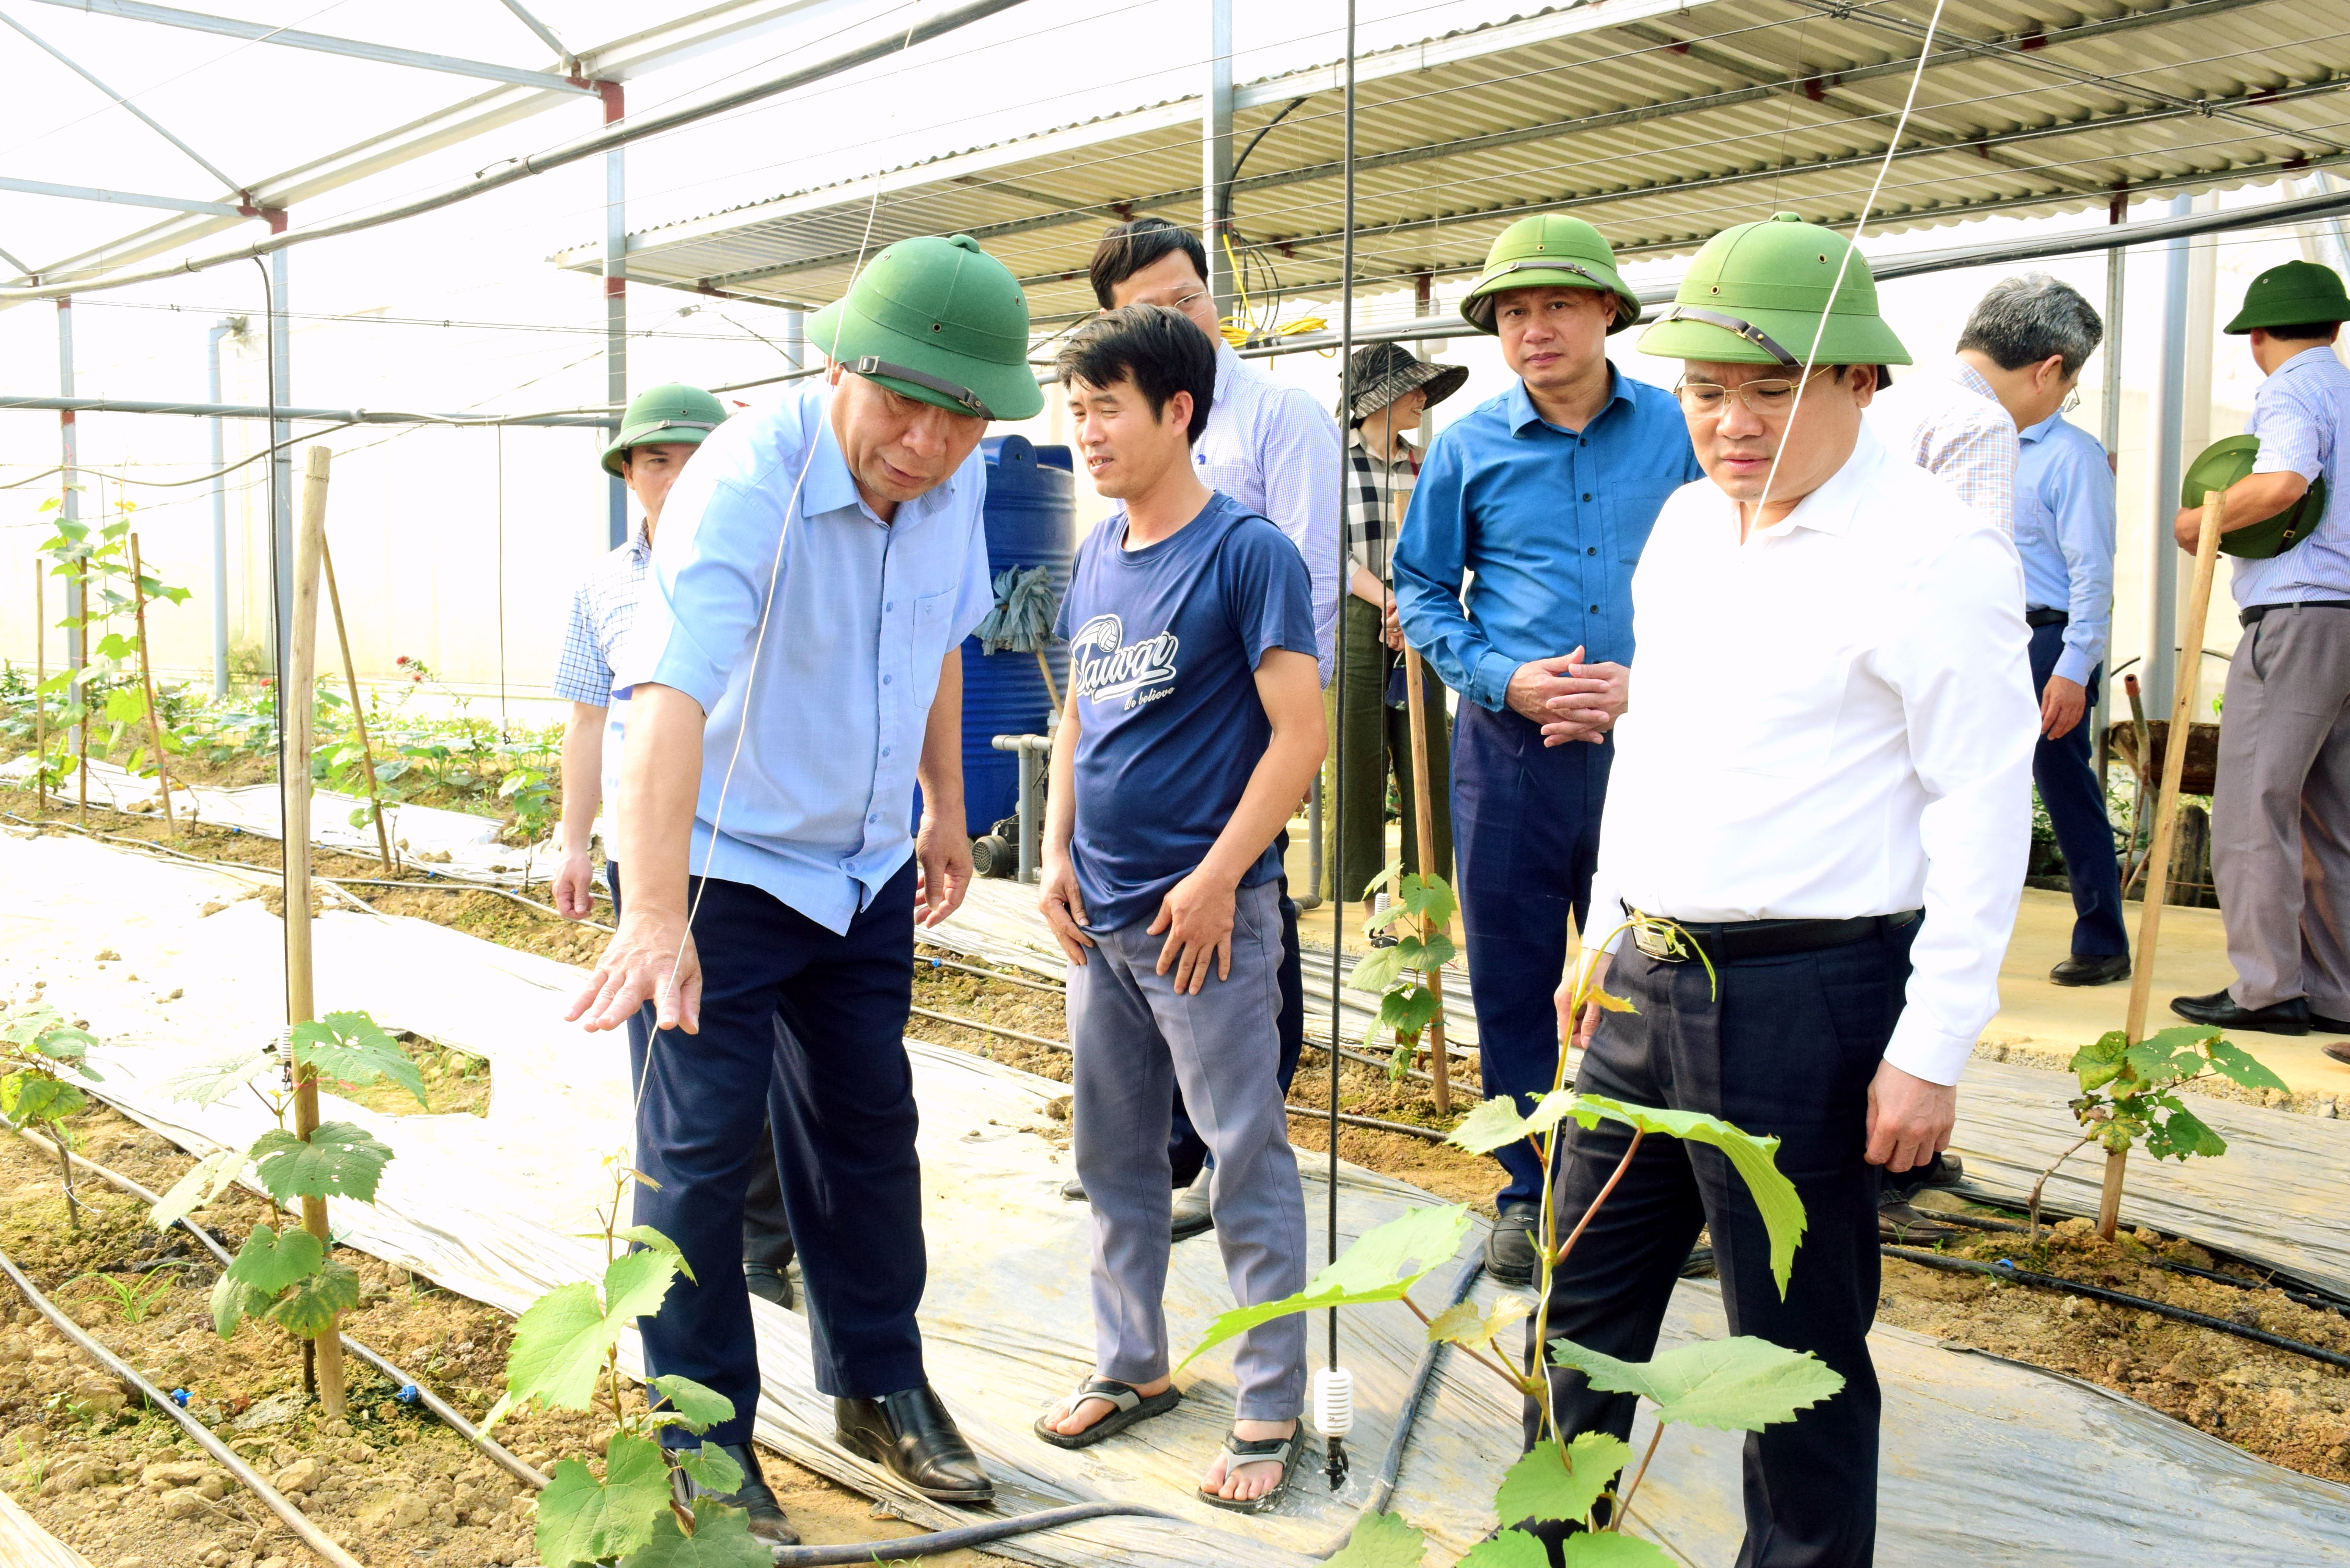 bna_Lãnh đạo tỉnh tham quan mô hình sản xuất rau áp dụng công nghệ cao tại xã trên địa bàn huyện Yên Thành. Ảnh Xuân Hoàng.jpg